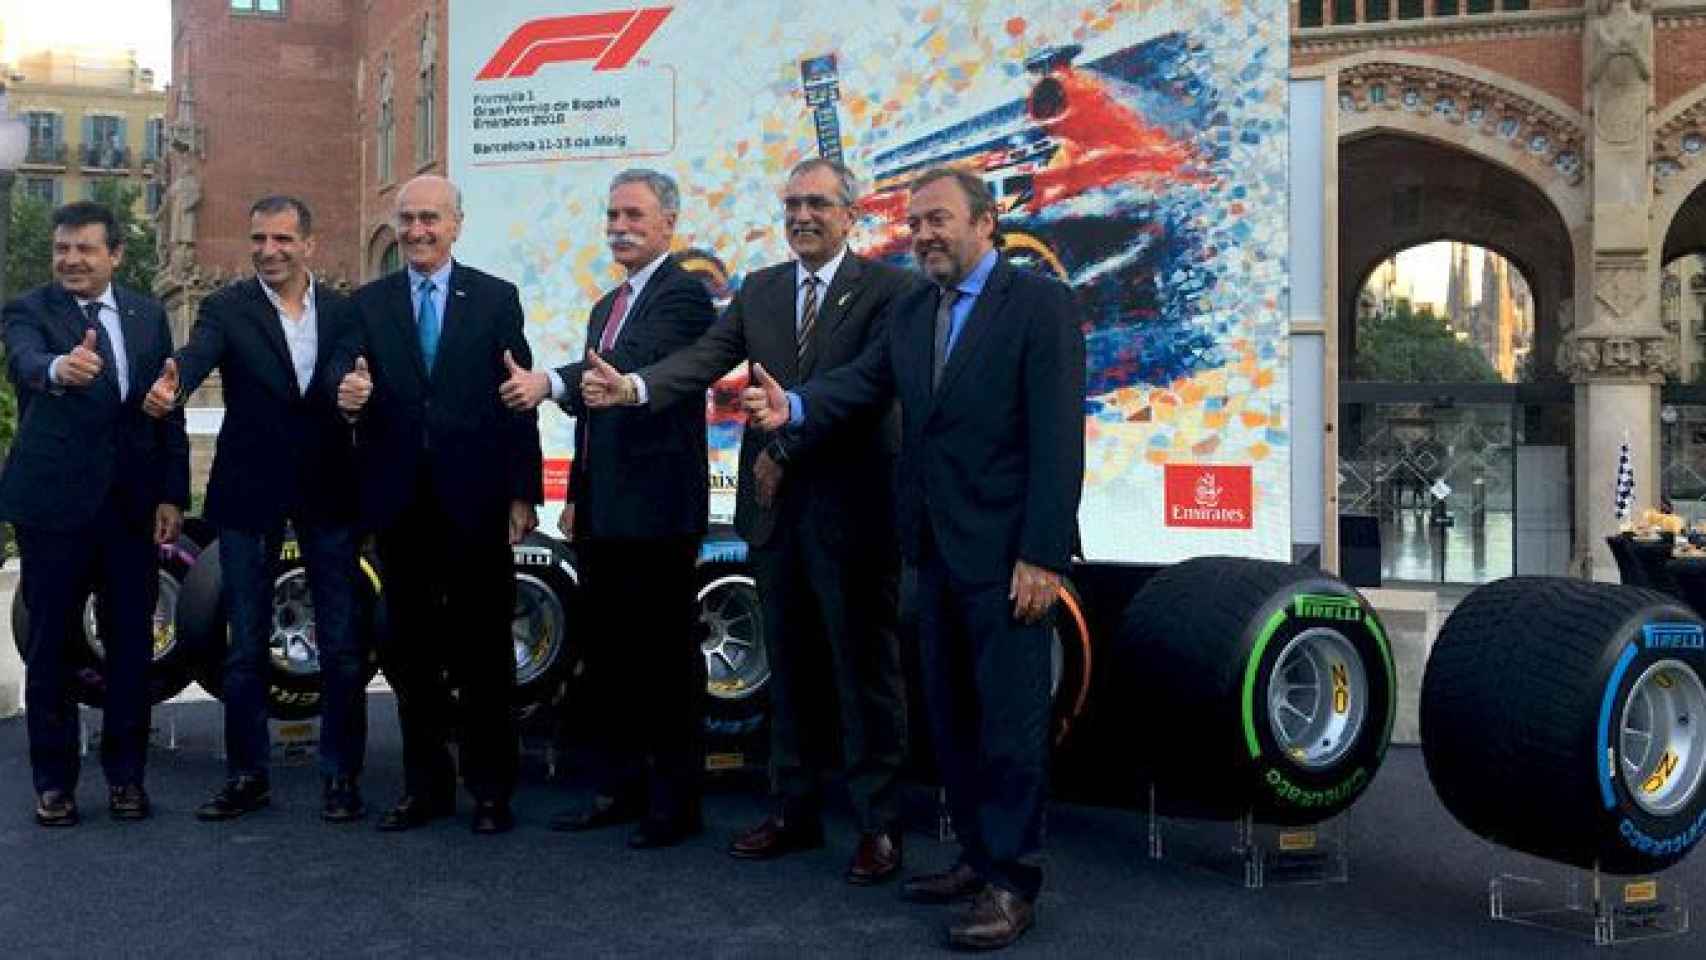 Los representantes del Circuit de Barcelona- Catalunya en la presentación del Gran Premio de España de F1, con Chase Carey (c), máximo gestor de la carrera / CG